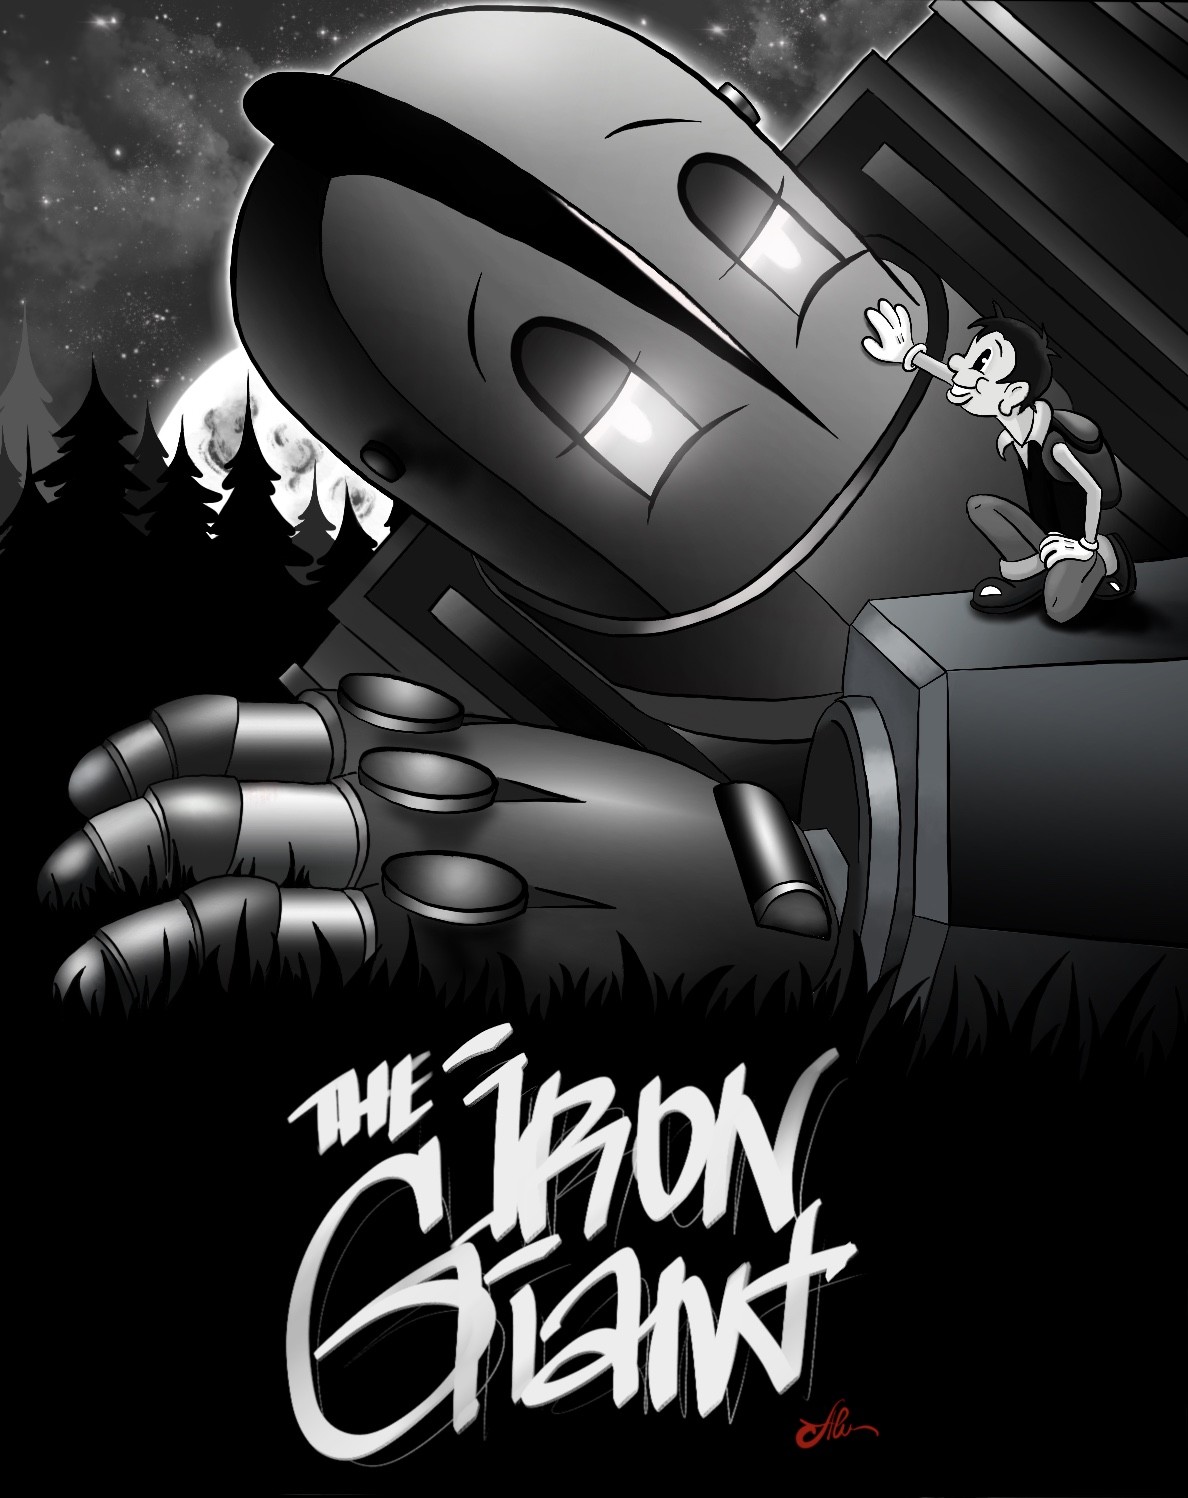 The Iron Giant fanart.